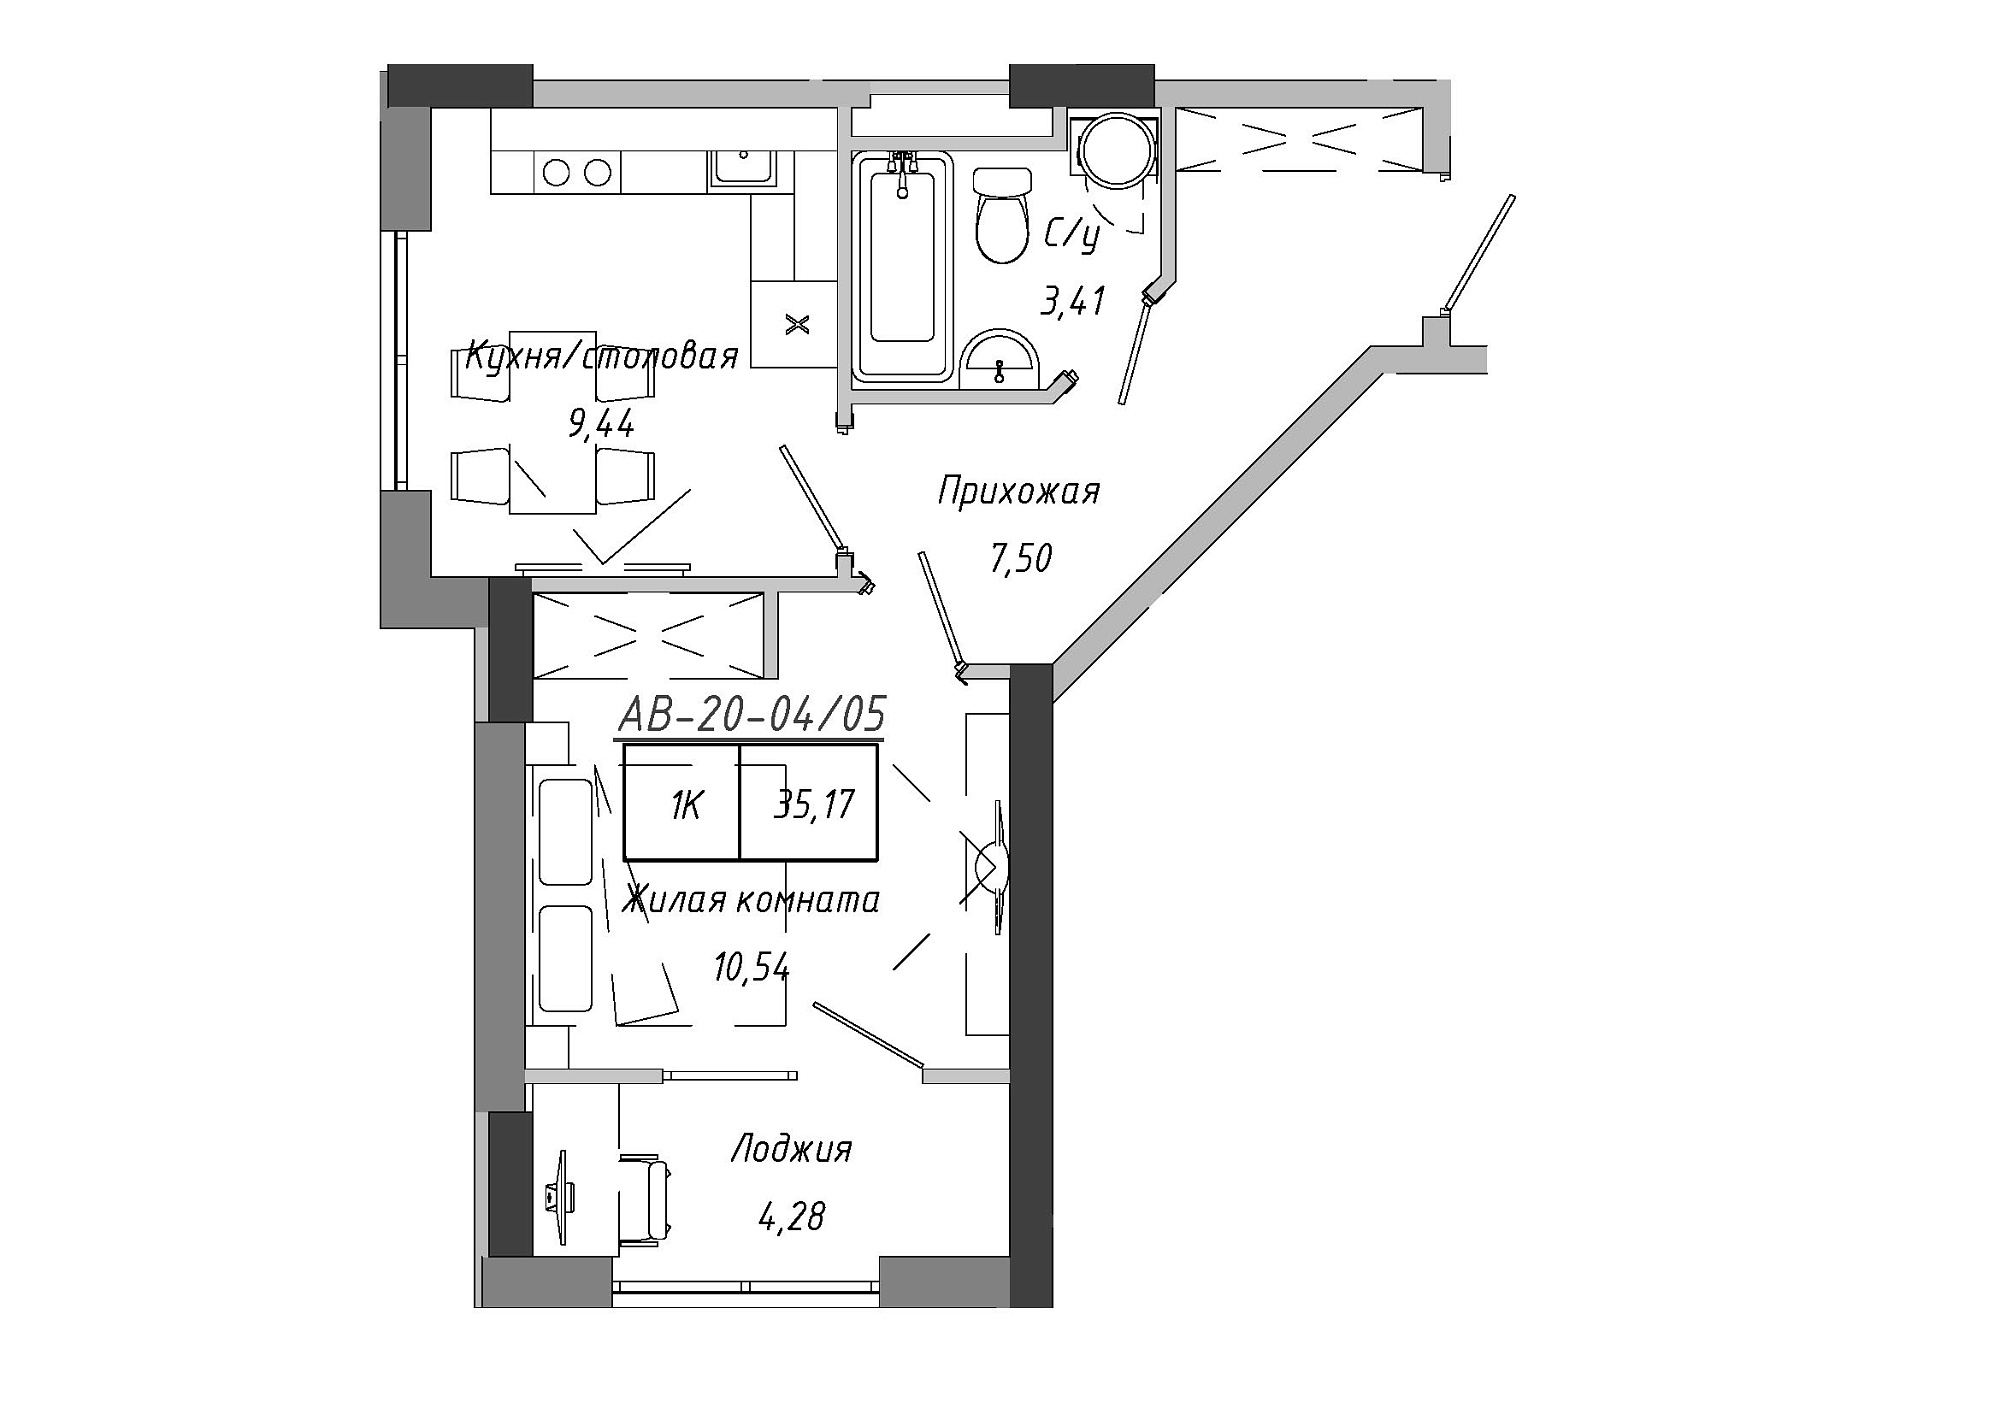 Планування 1-к квартира площею 35.17м2, AB-20-04/00005.